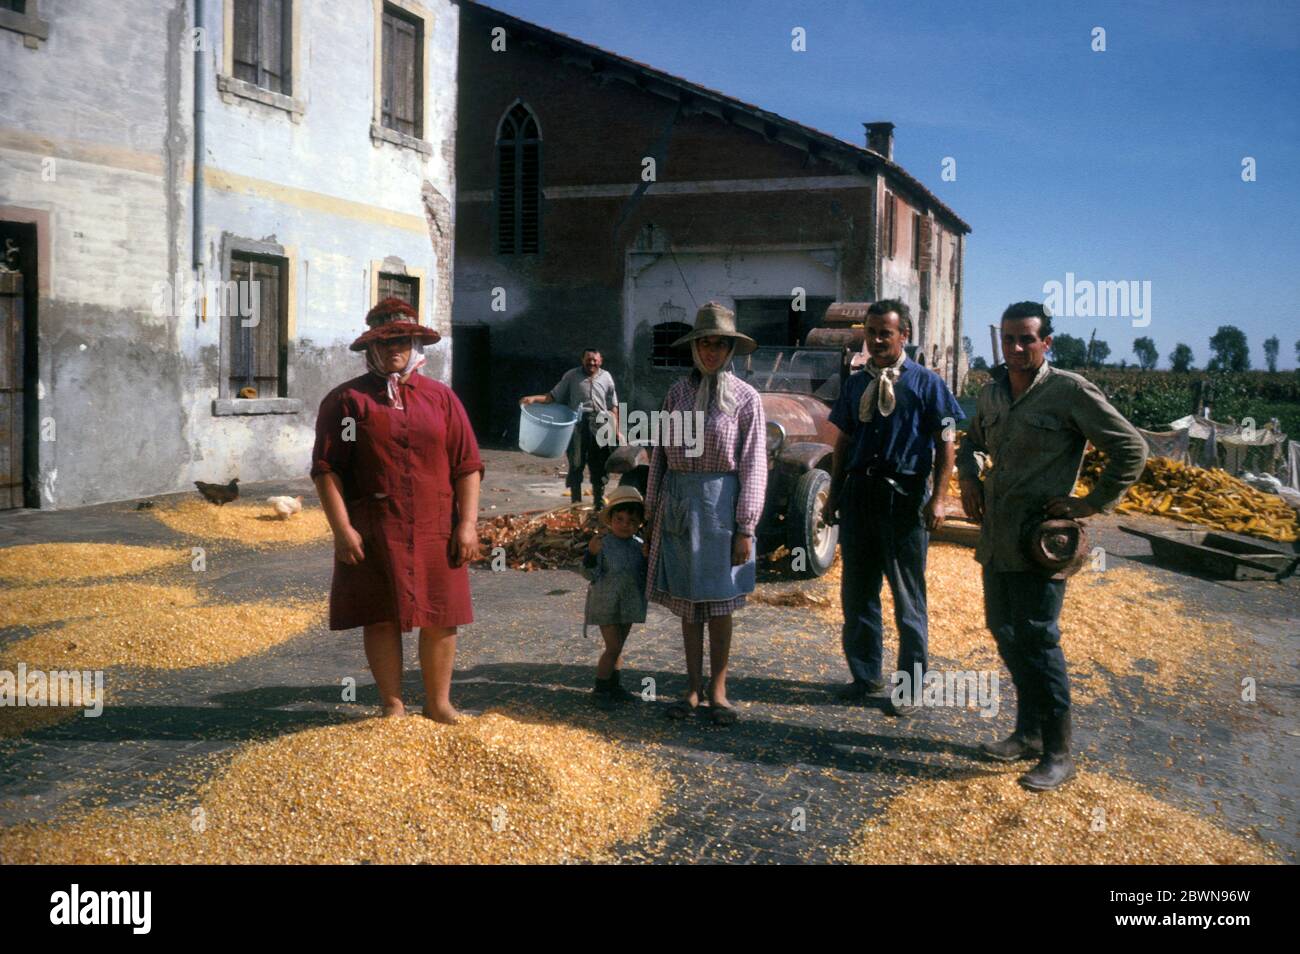 Famille de travailleurs dans une ferme du sud de l'Italie avec des kernals de maïs qui ont été battus, photographiés en 1964 Banque D'Images